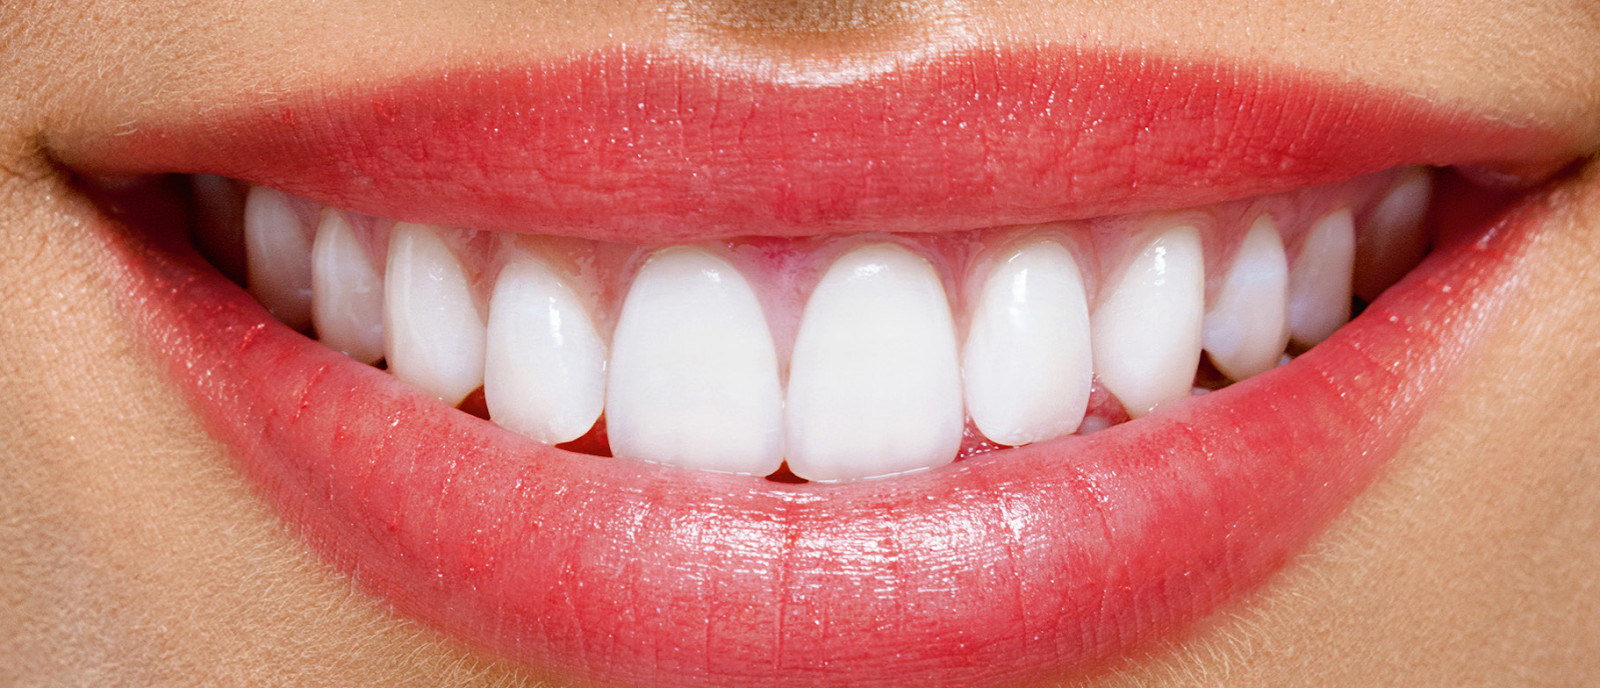 معلومات مهمة عن تكلفة hollywood smile والفرق بينها وبين تبييض الأسنان!